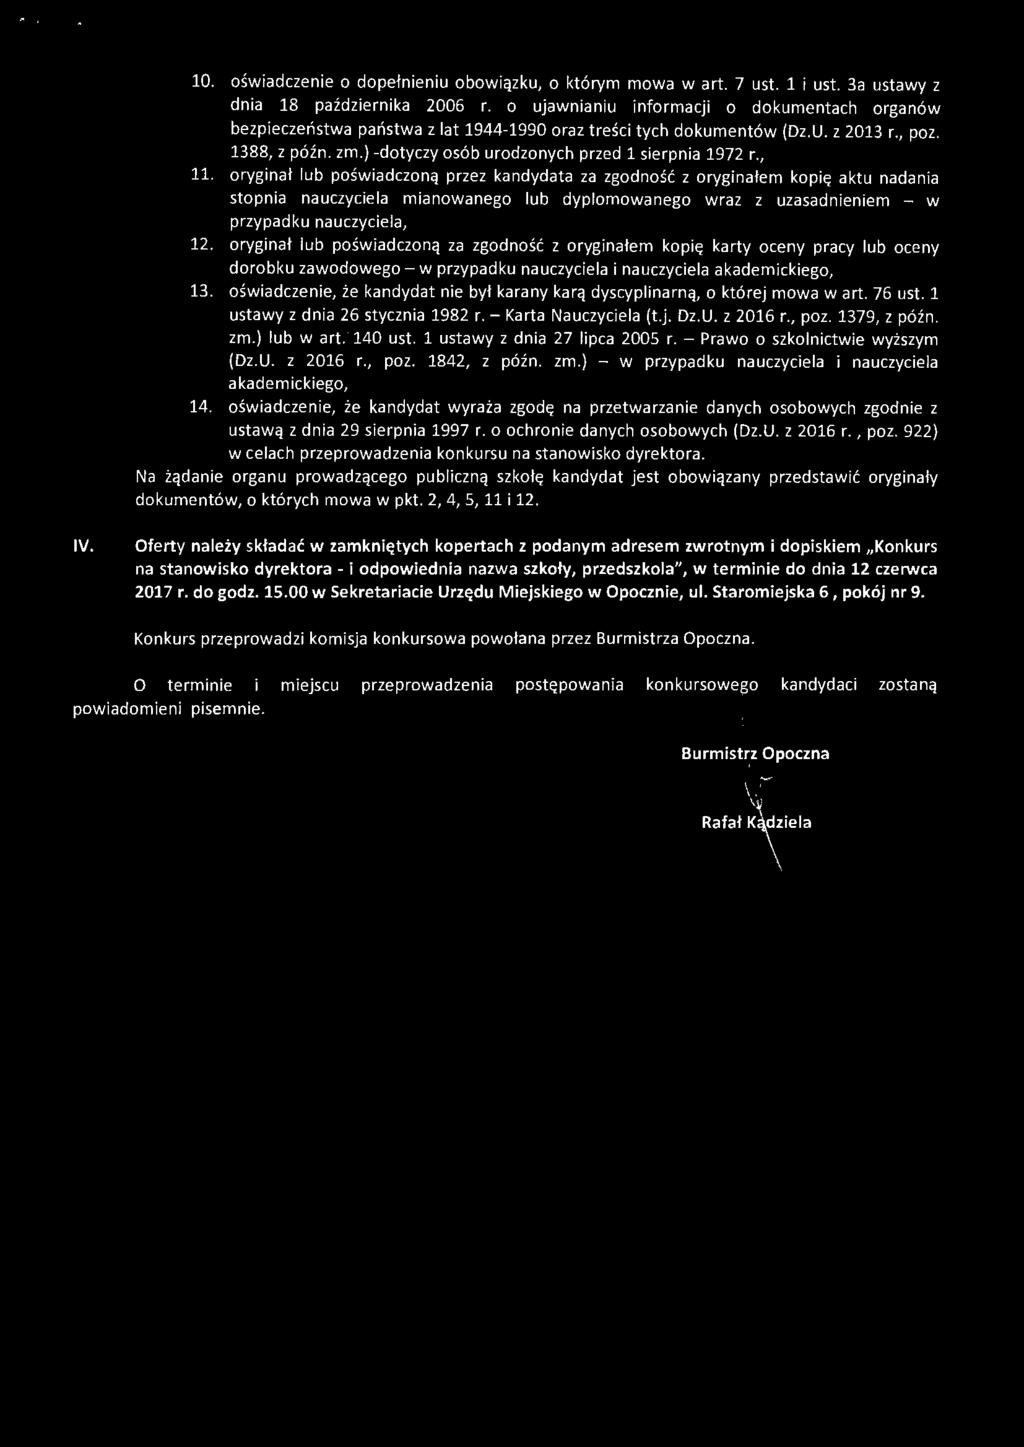 ". 10. oświadczenie o dopełnieniu obowiązku, o którym mowa w art. 7 ust. 1 i ust. 3a ustawy z dnia 18 października 2006 r.